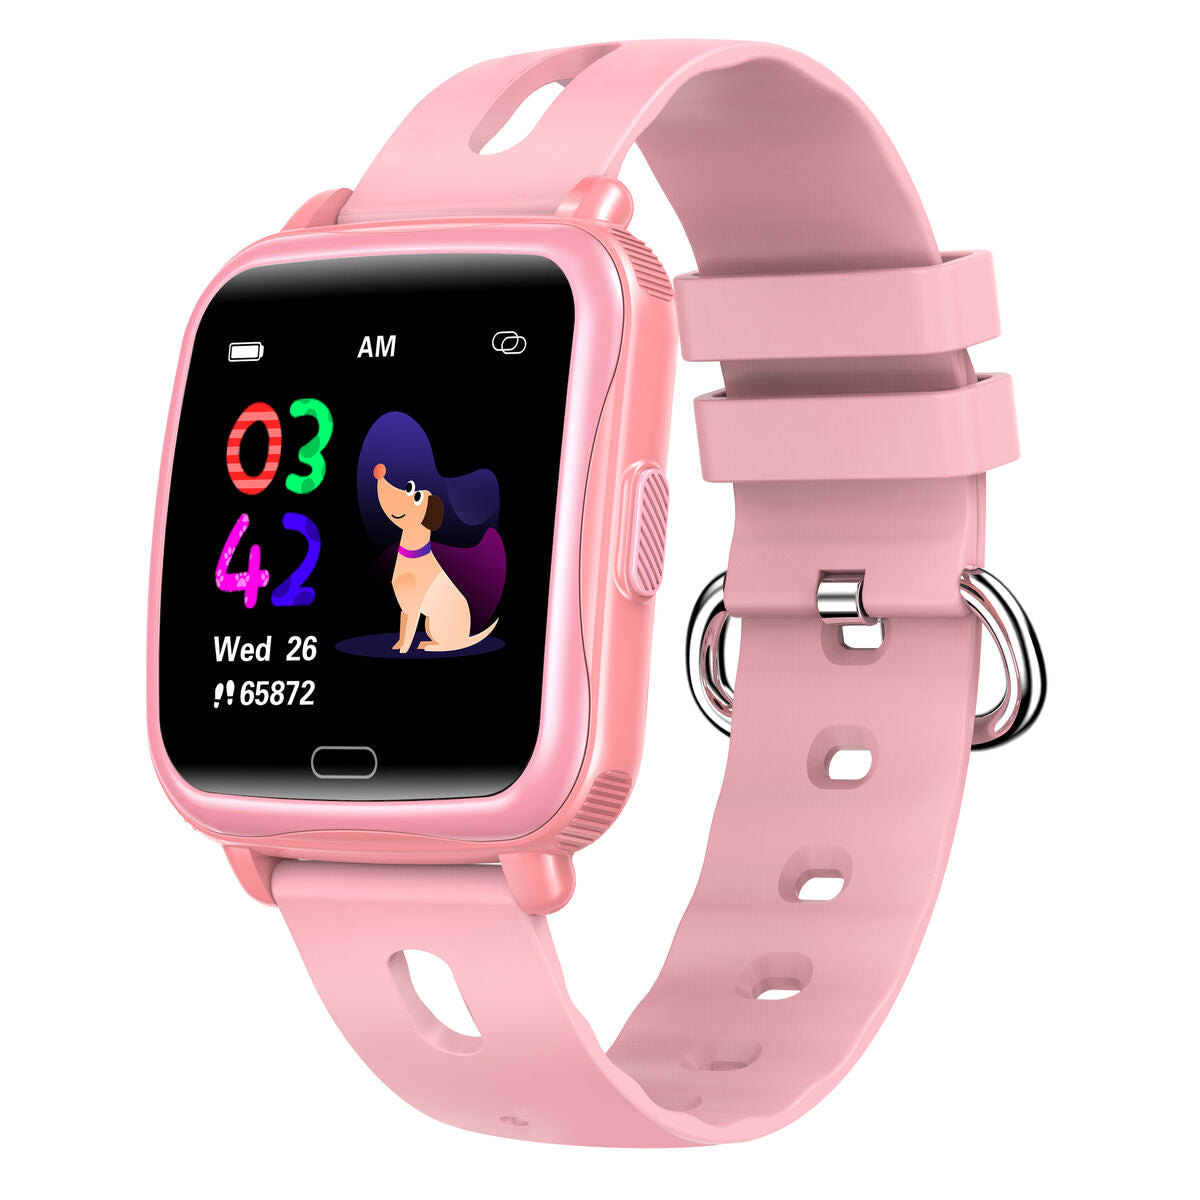 Kaufe Smartwatch für Kinder Denver Electronics SWK-110P Rosa 1,4" bei AWK Flagship um € 46.00